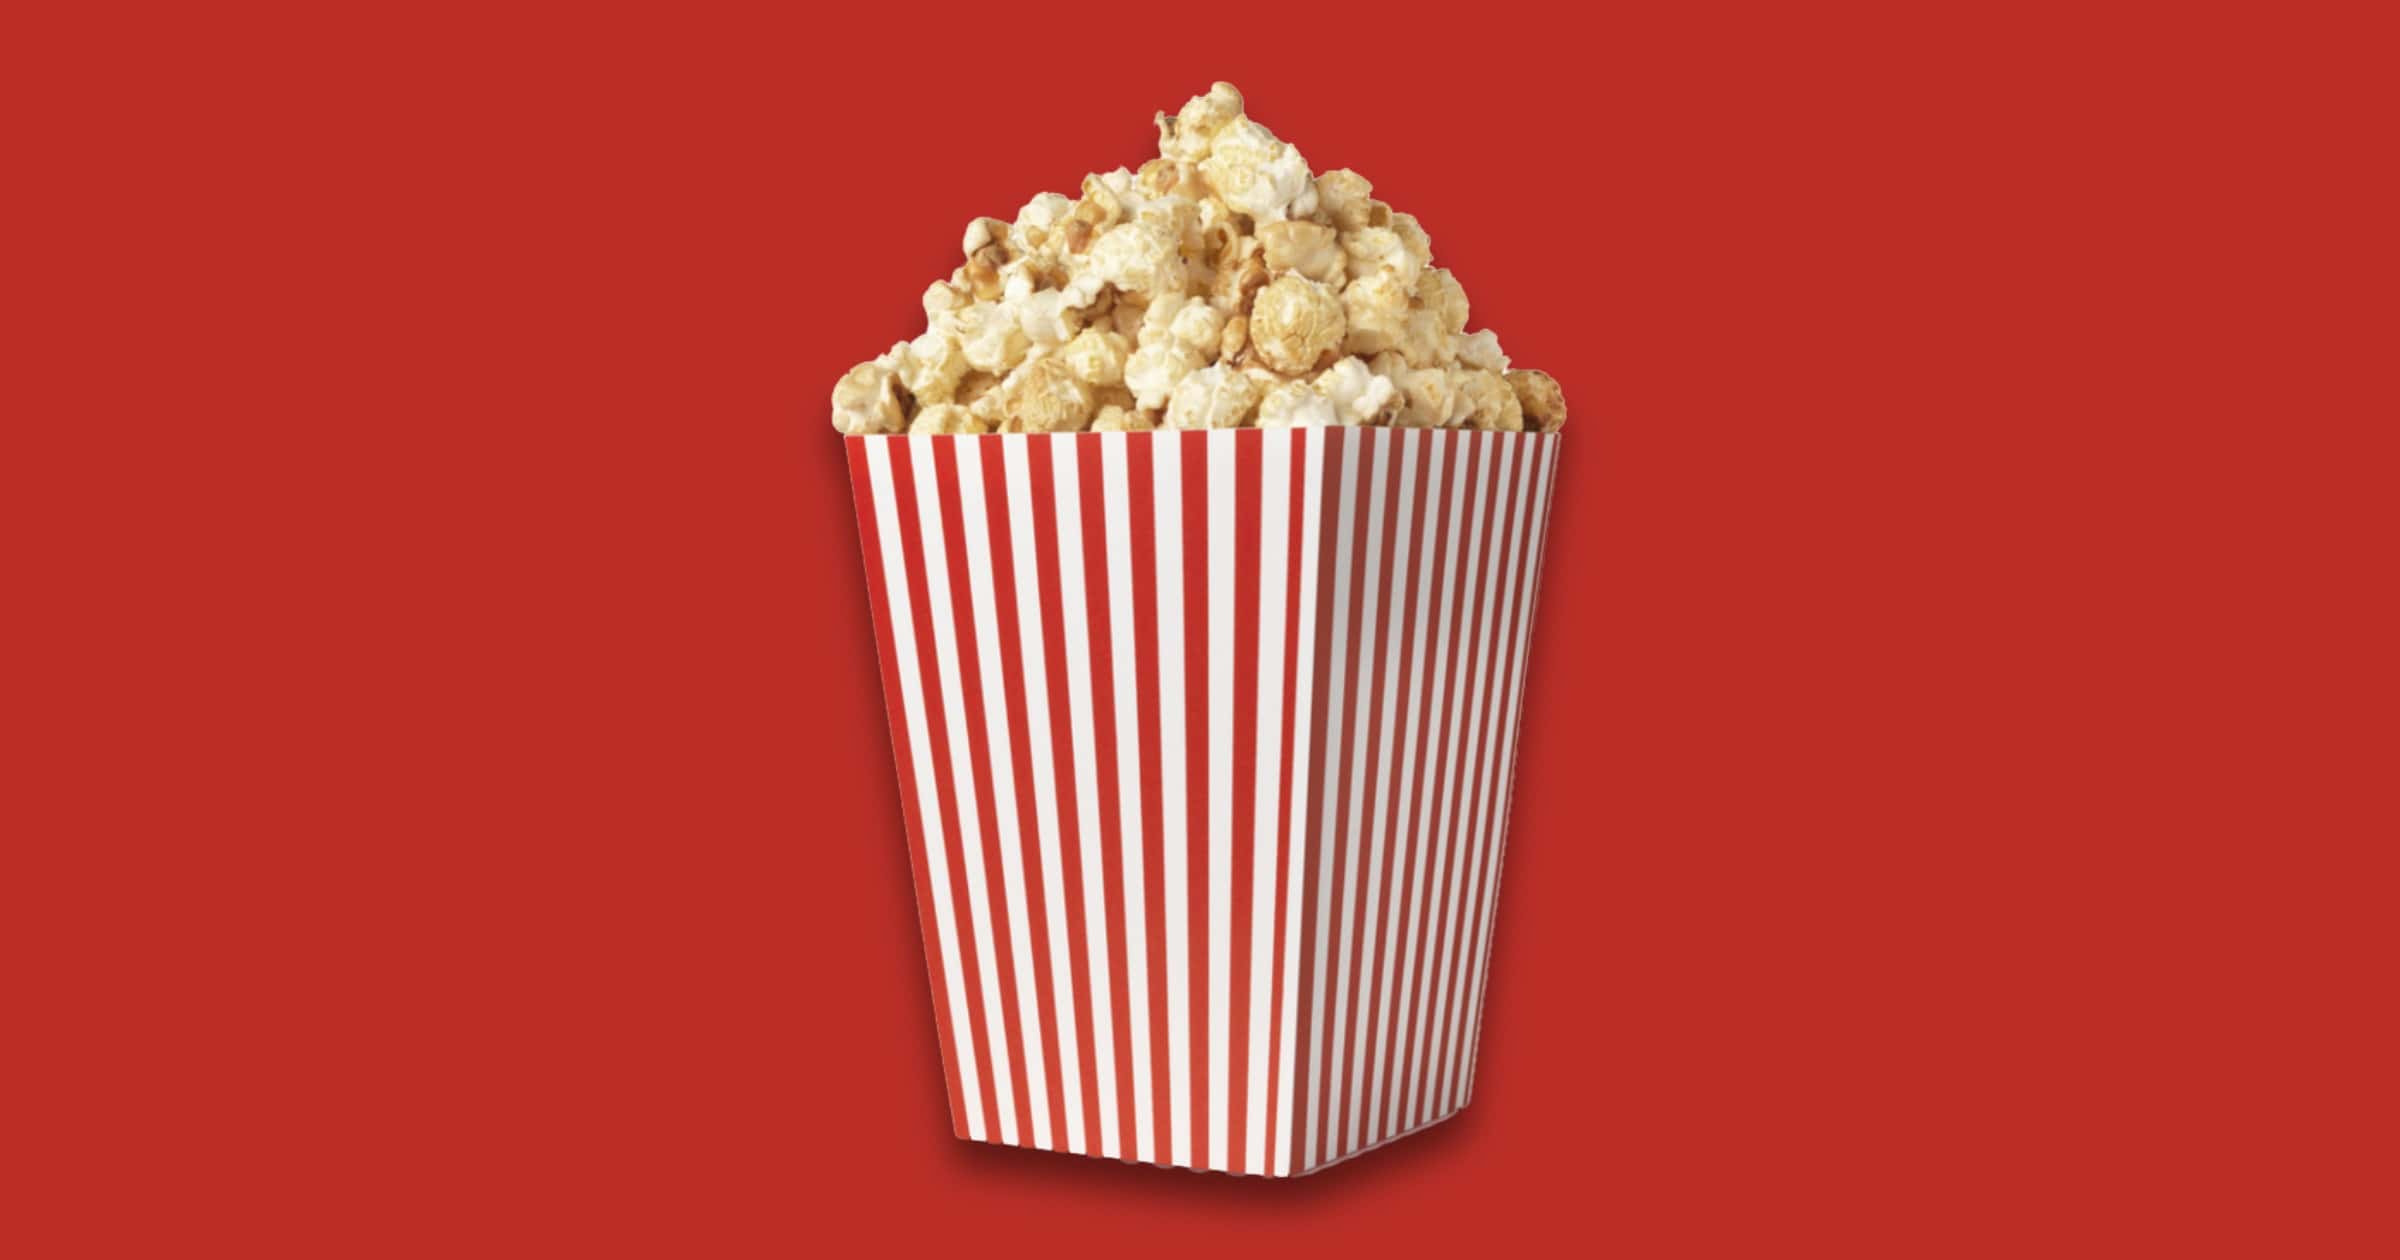 Video Piracy Site ‘Popcorn Time’ Shuts Down